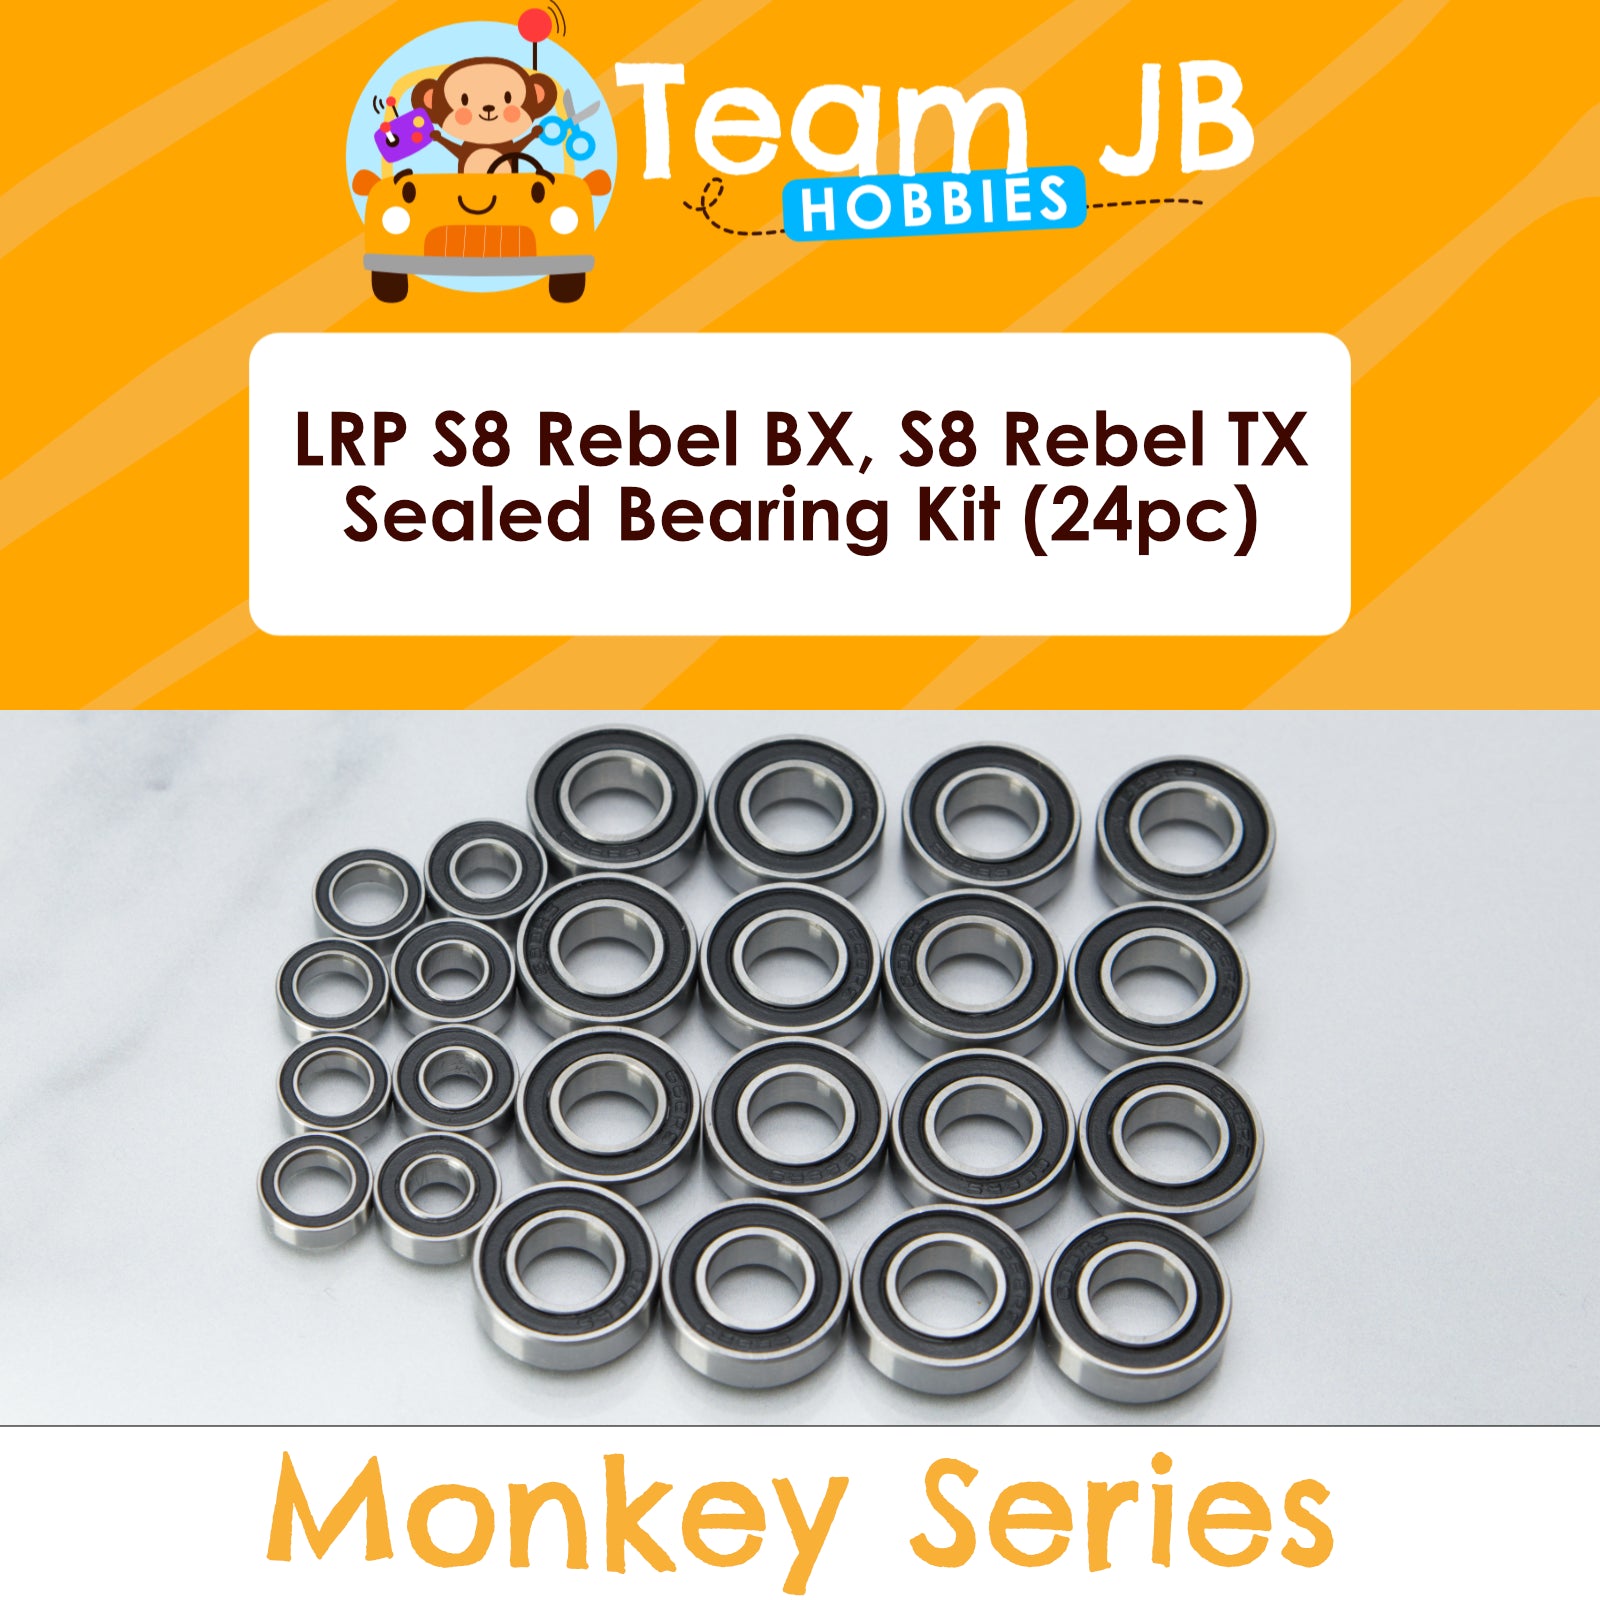 LRP S8 Rebel BX, S8 Rebel TX - Sealed Bearing Kit